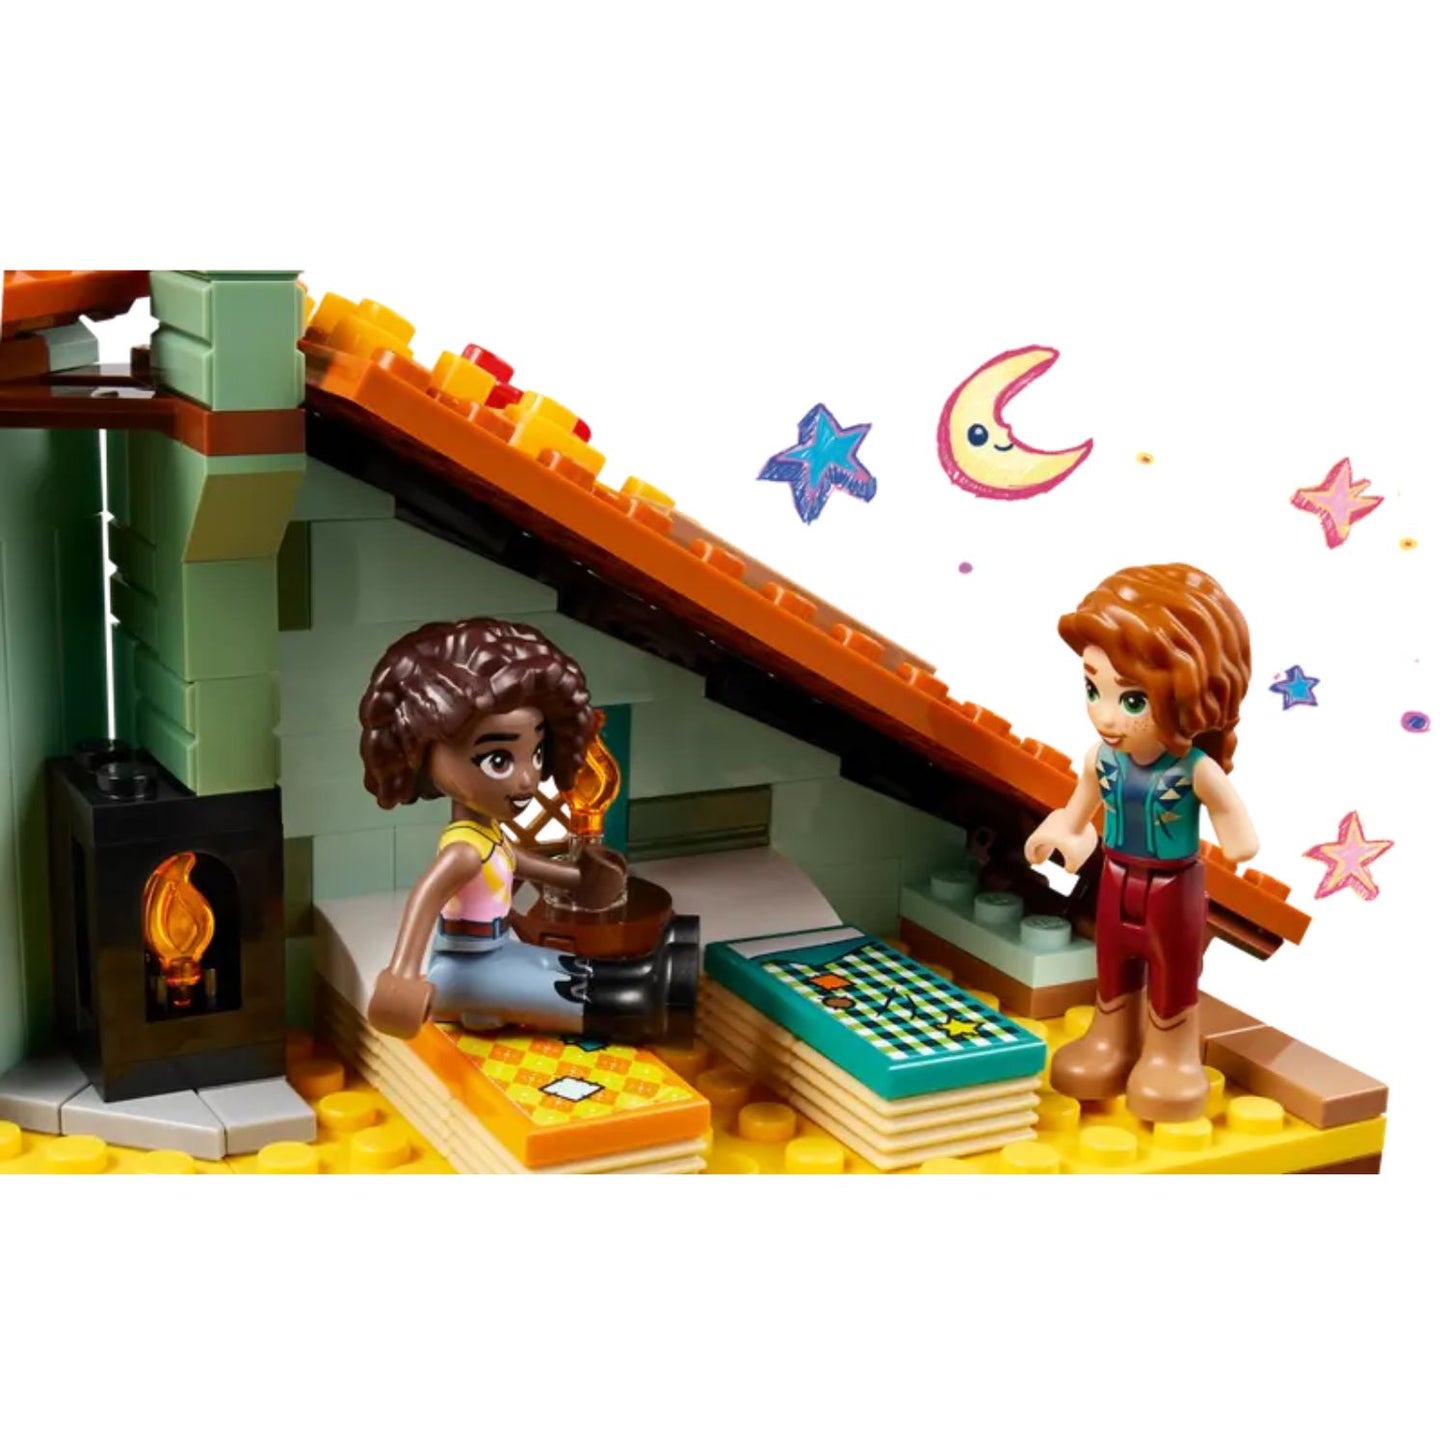 Lego - Friends La scuderia di Autumn 41745